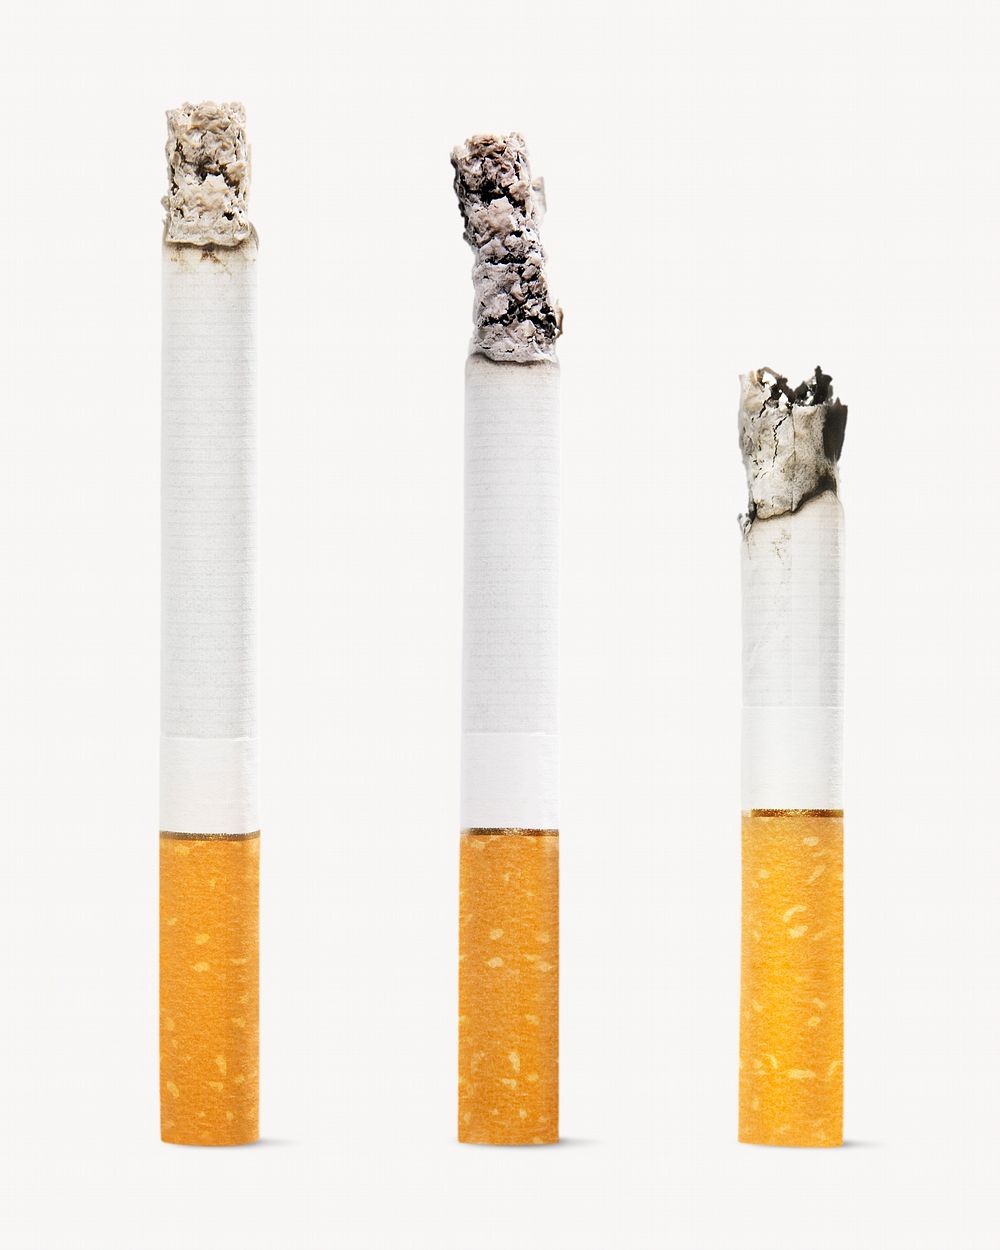 Cigarettes, burning smoke isolated image